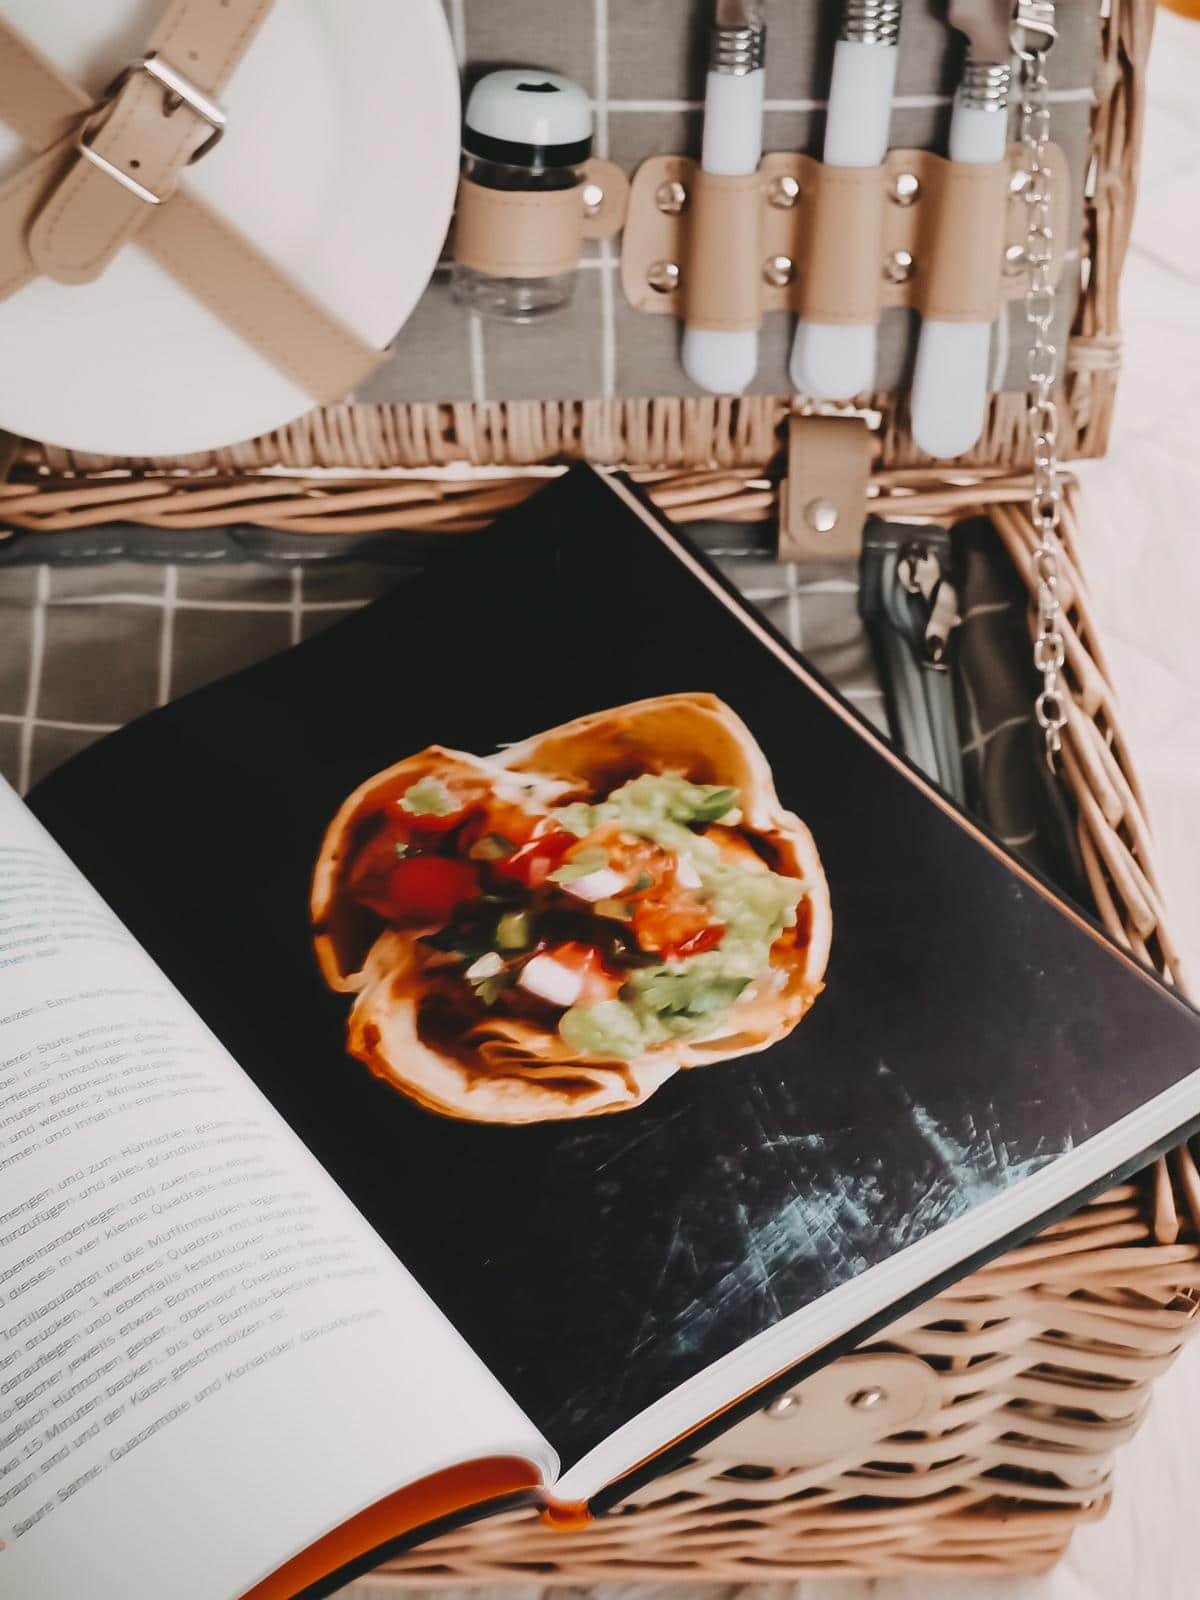 Heute zeige ich euch meine aktuellen Lieblingskochbücher ausführlich : Fast Food mit Tasty und Slowfood mit Immergrün von Mikkel Karstad auf meinem Blog.